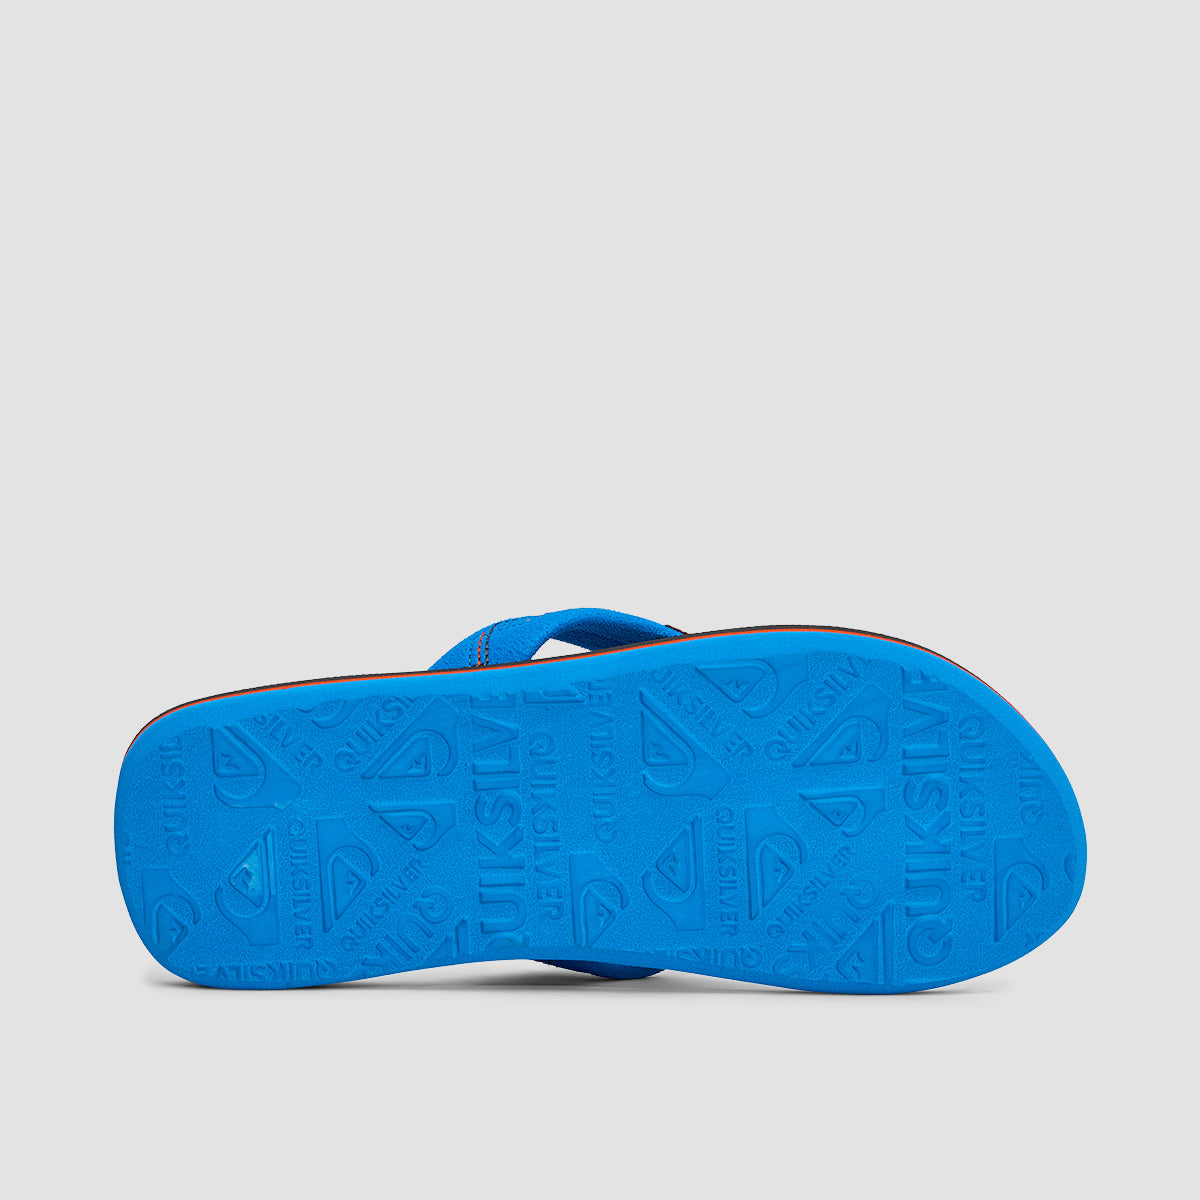 Quiksilver Molo Stitchy Sandals Blue/Grey/Blue - Kids